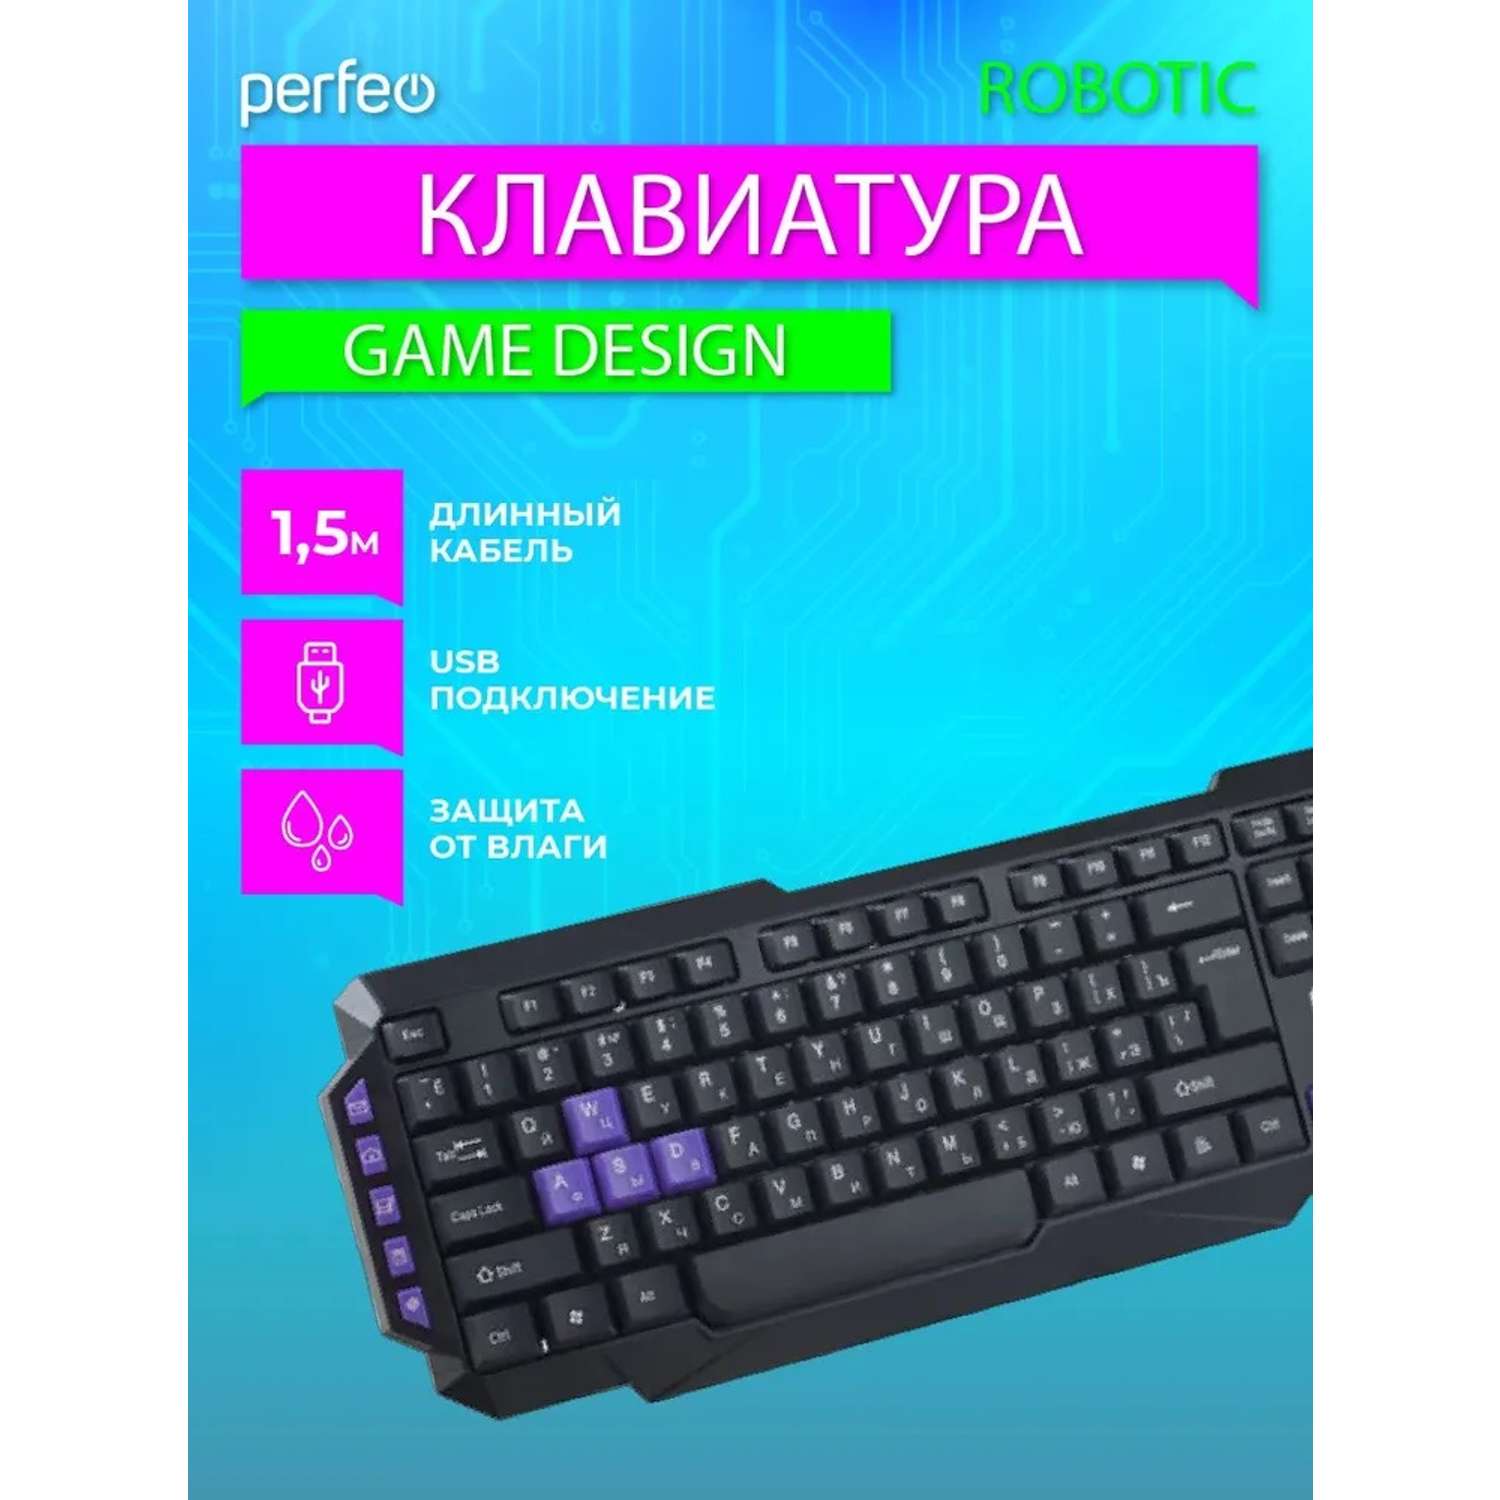 Клавиатура проводная Perfeo ROBOTIC Game Design Multimedia USB чёрная - фото 2